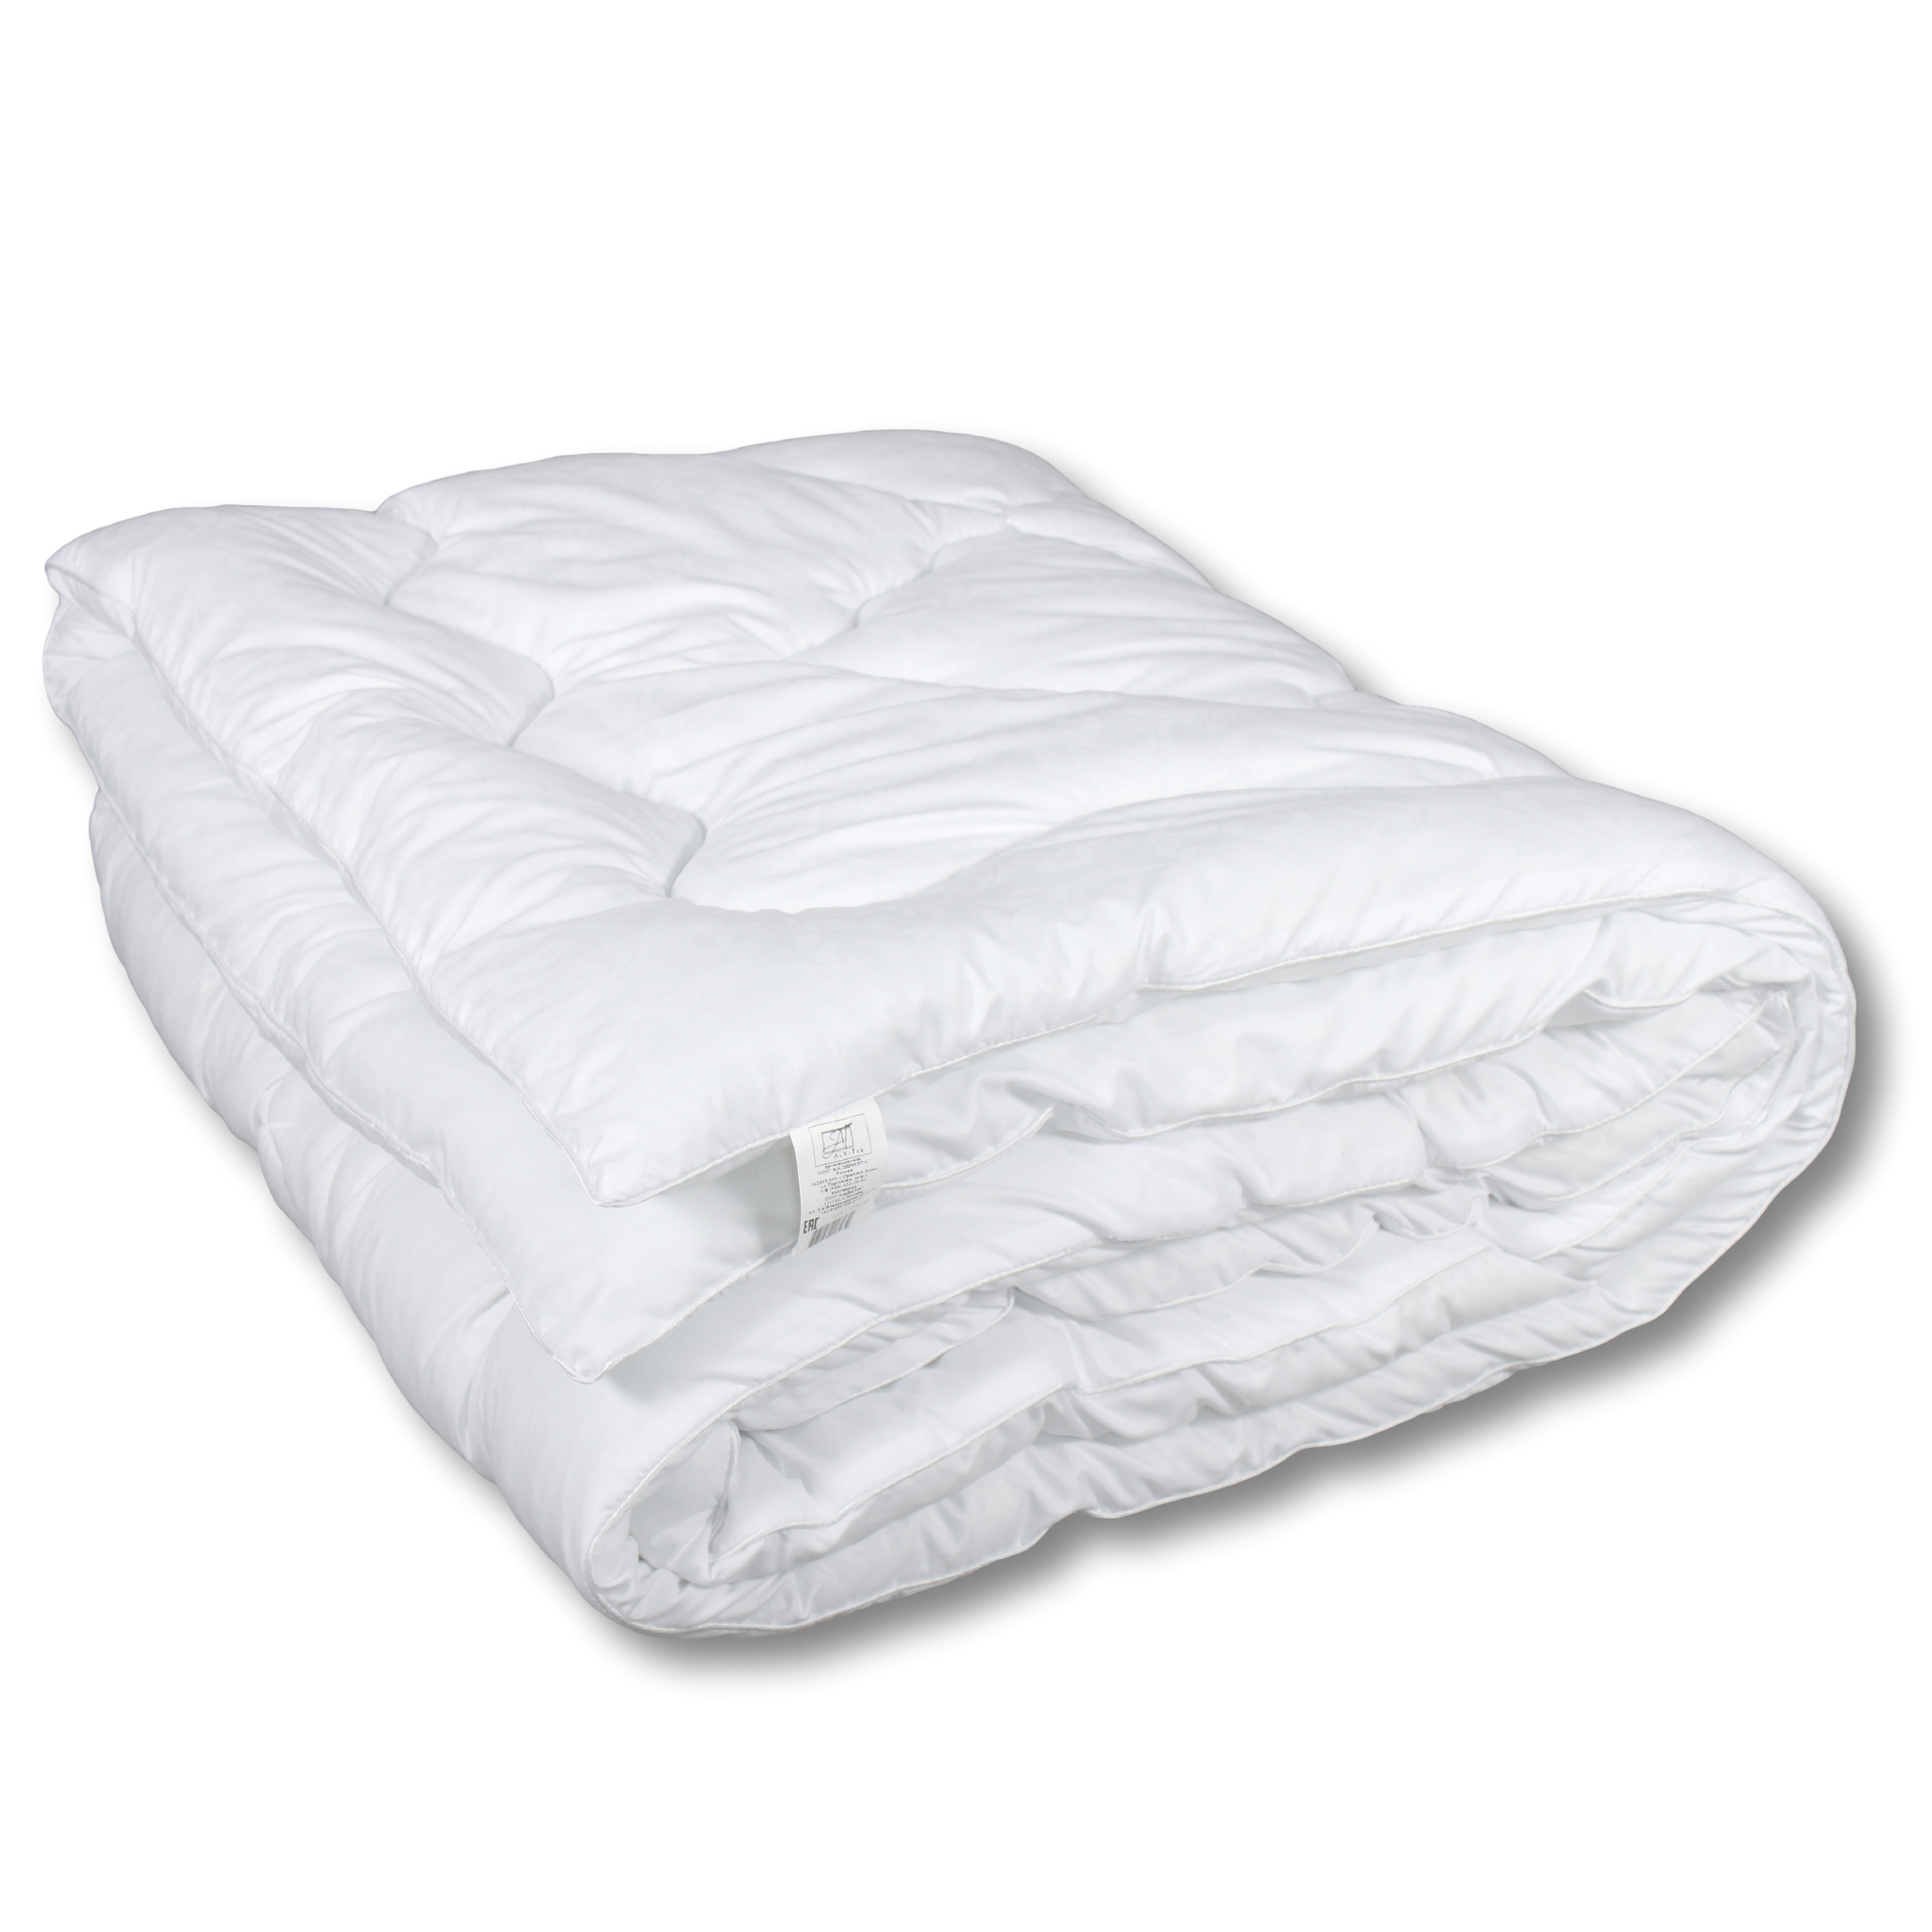 Одеяло Roma Теплое (140х205 см), размер 140х205 см, цвет белый iff48117 Одеяло Roma Теплое (140х205 см) - фото 1